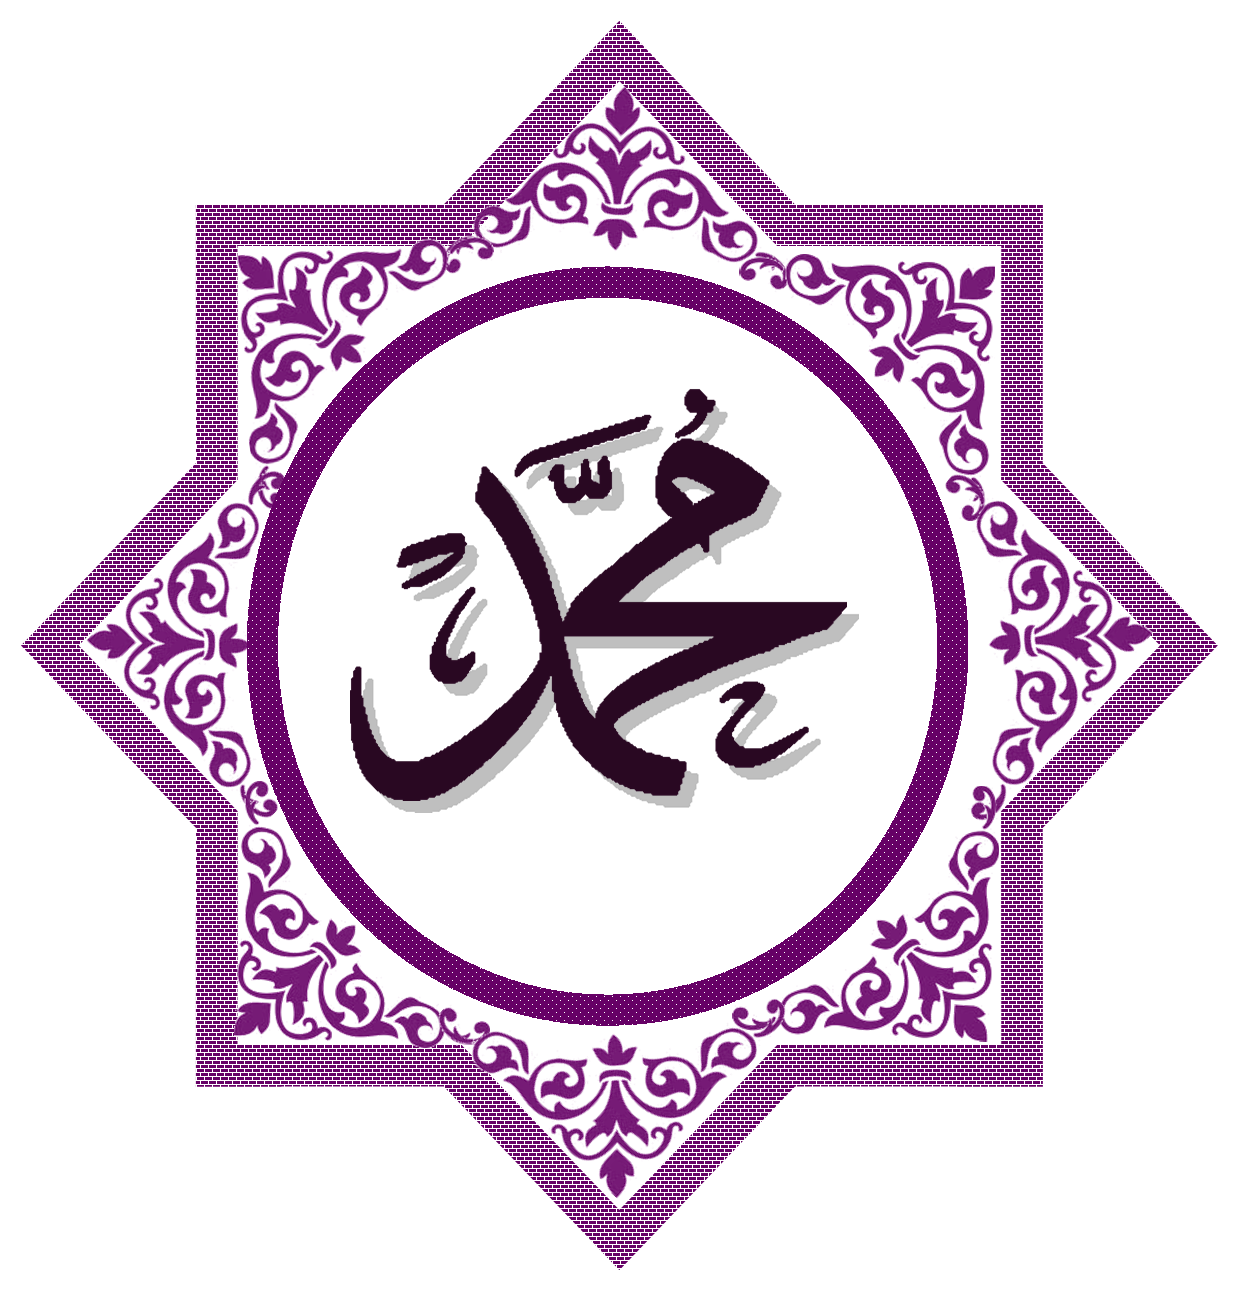 Kaligrafi Muhammad Saw - KibrisPDR